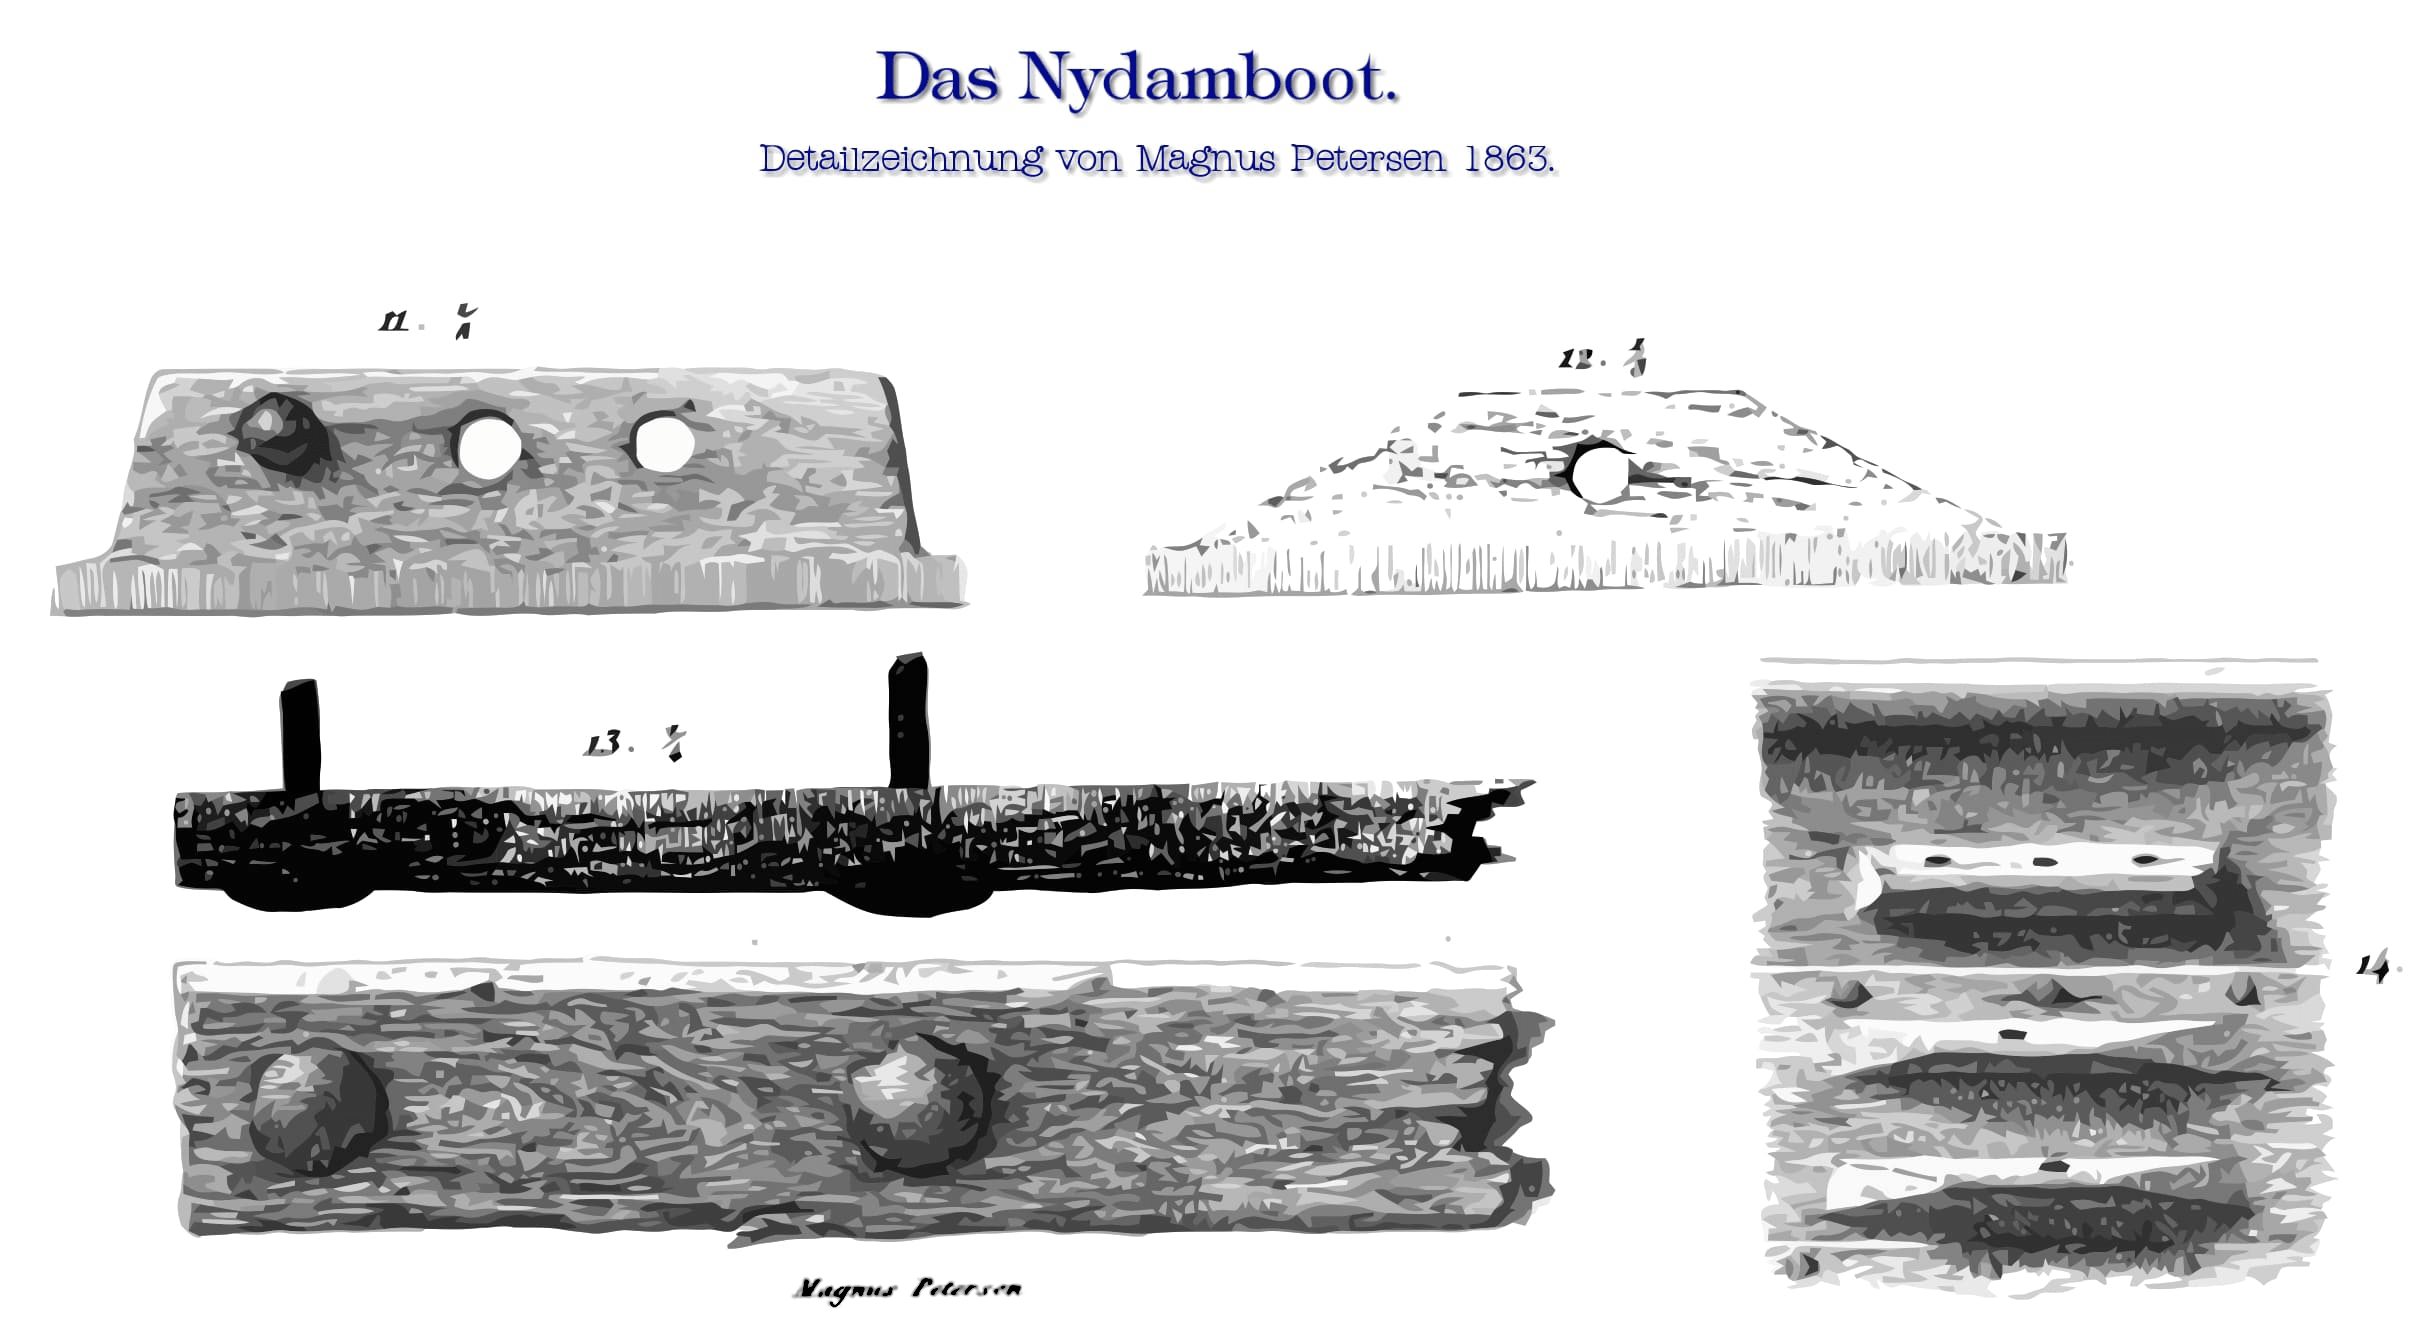 Nydamboot Detailzeichnung Magnus Petersen 1863